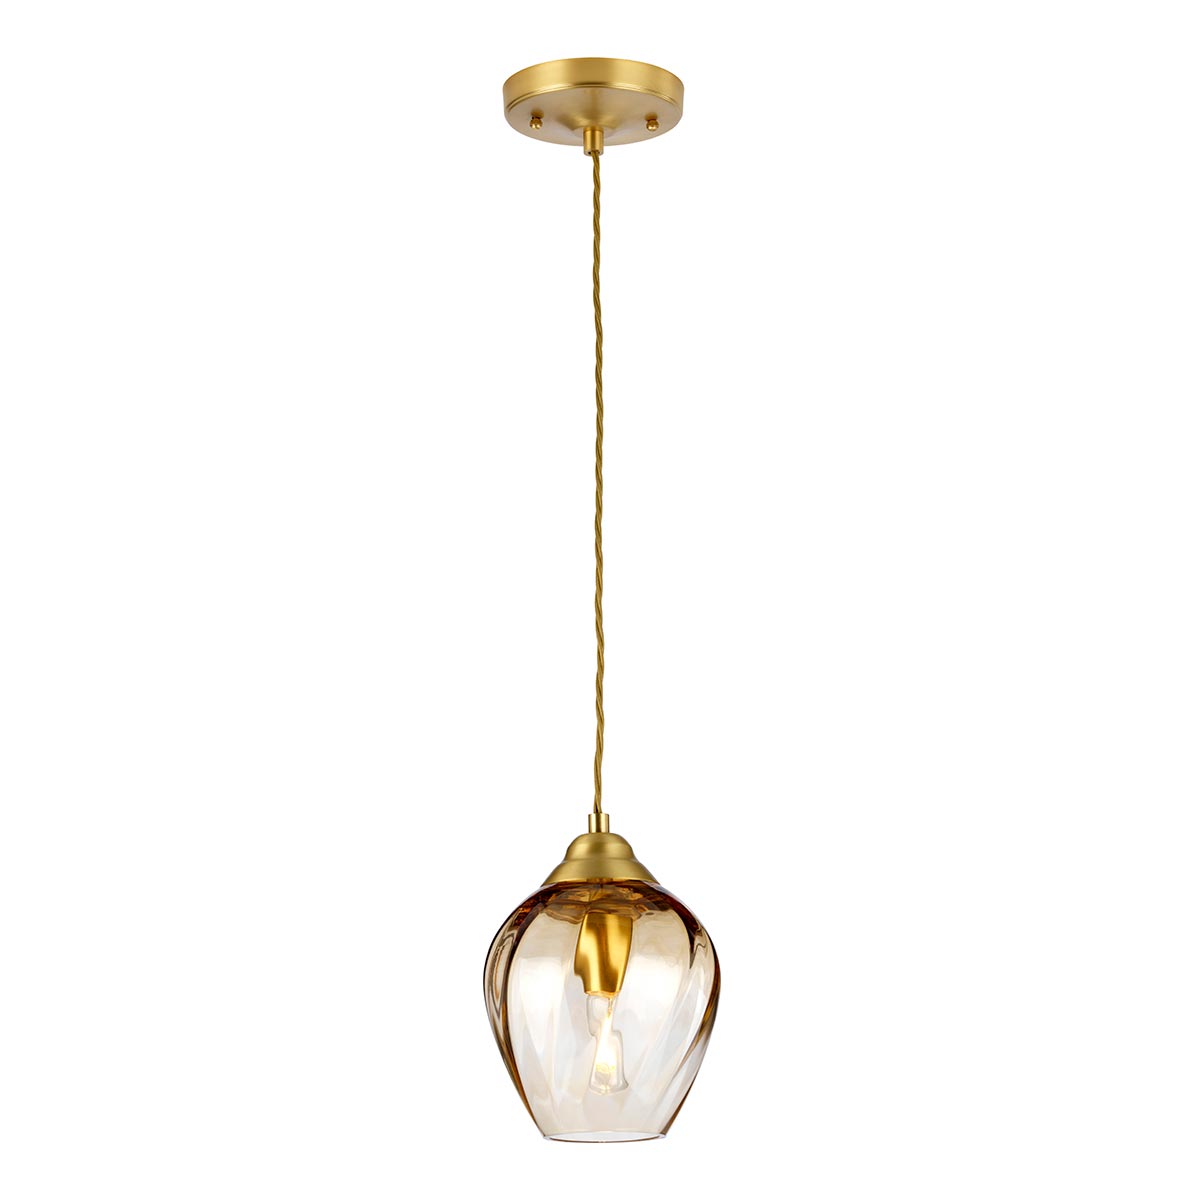 Tiber Elegant 1 Light Amber Glass Ceiling Pendant Brushed Brass